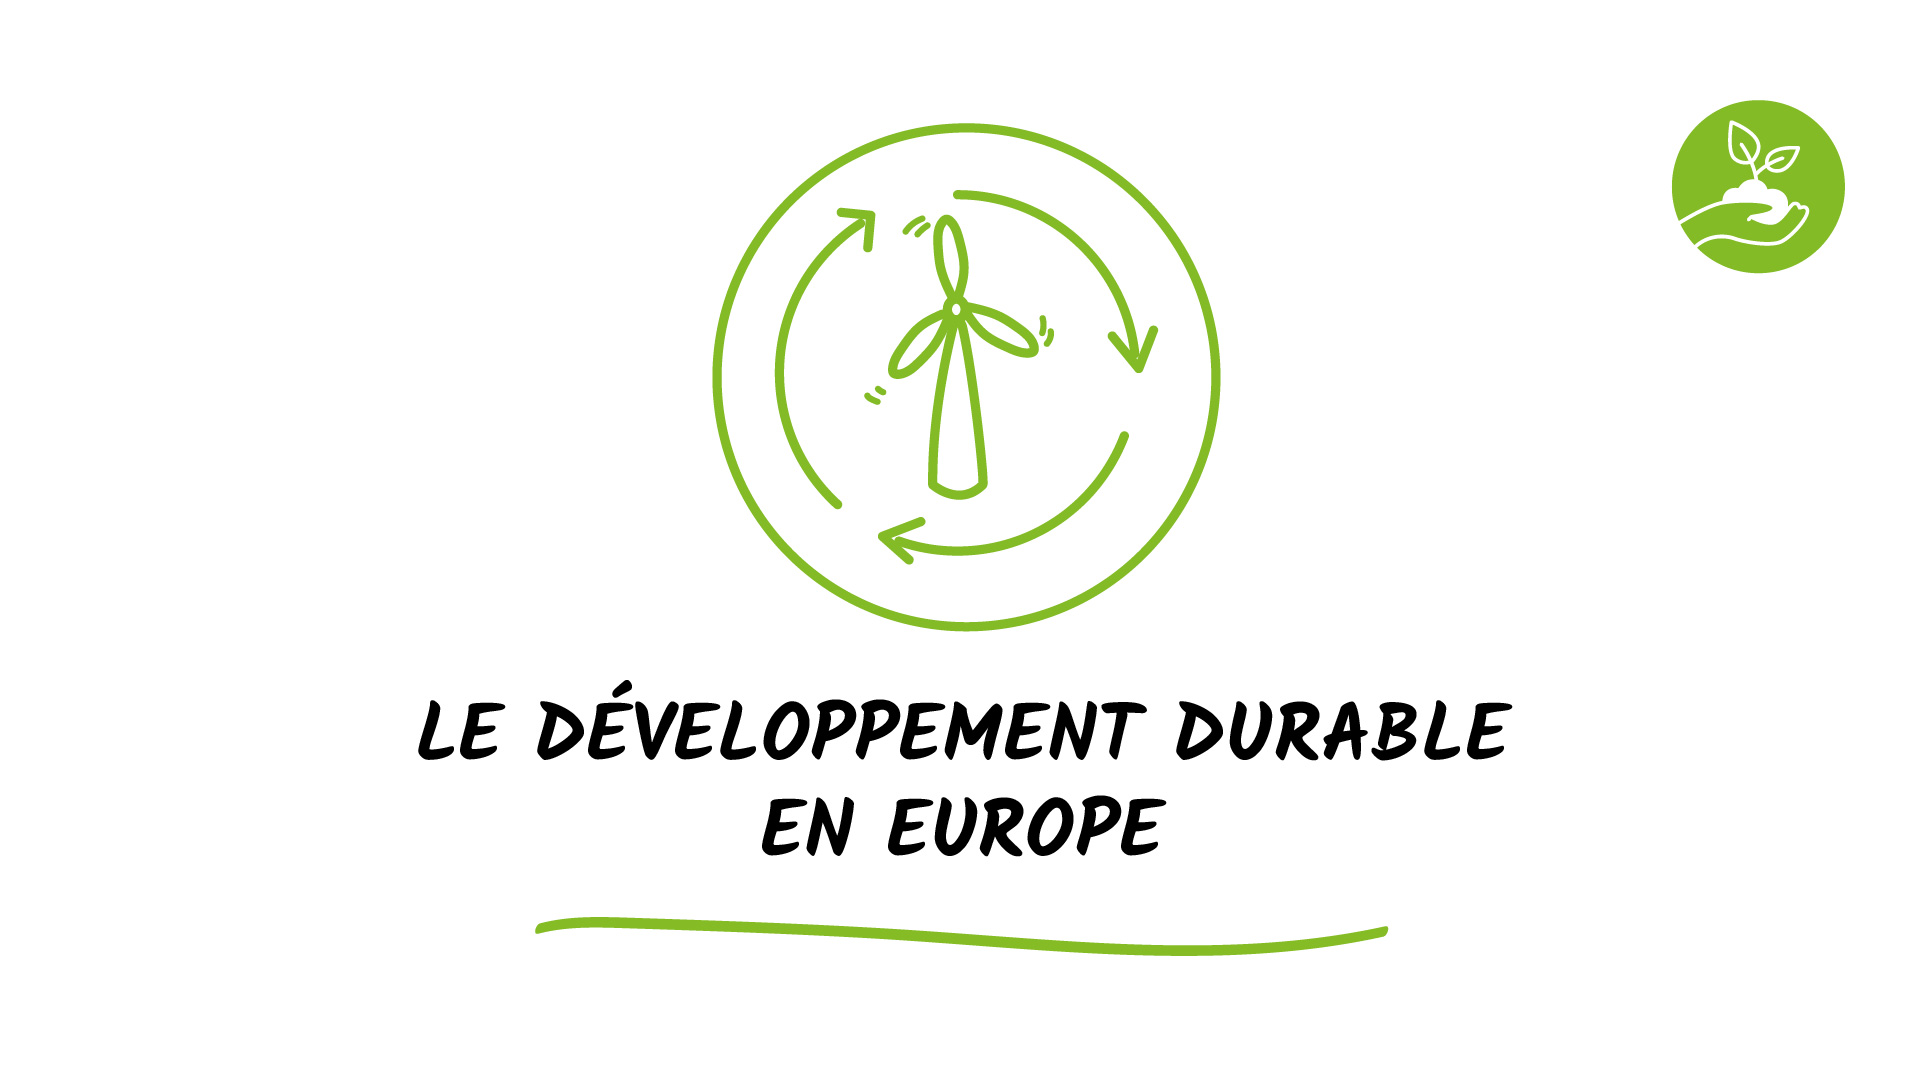 Le développement durable en Europe